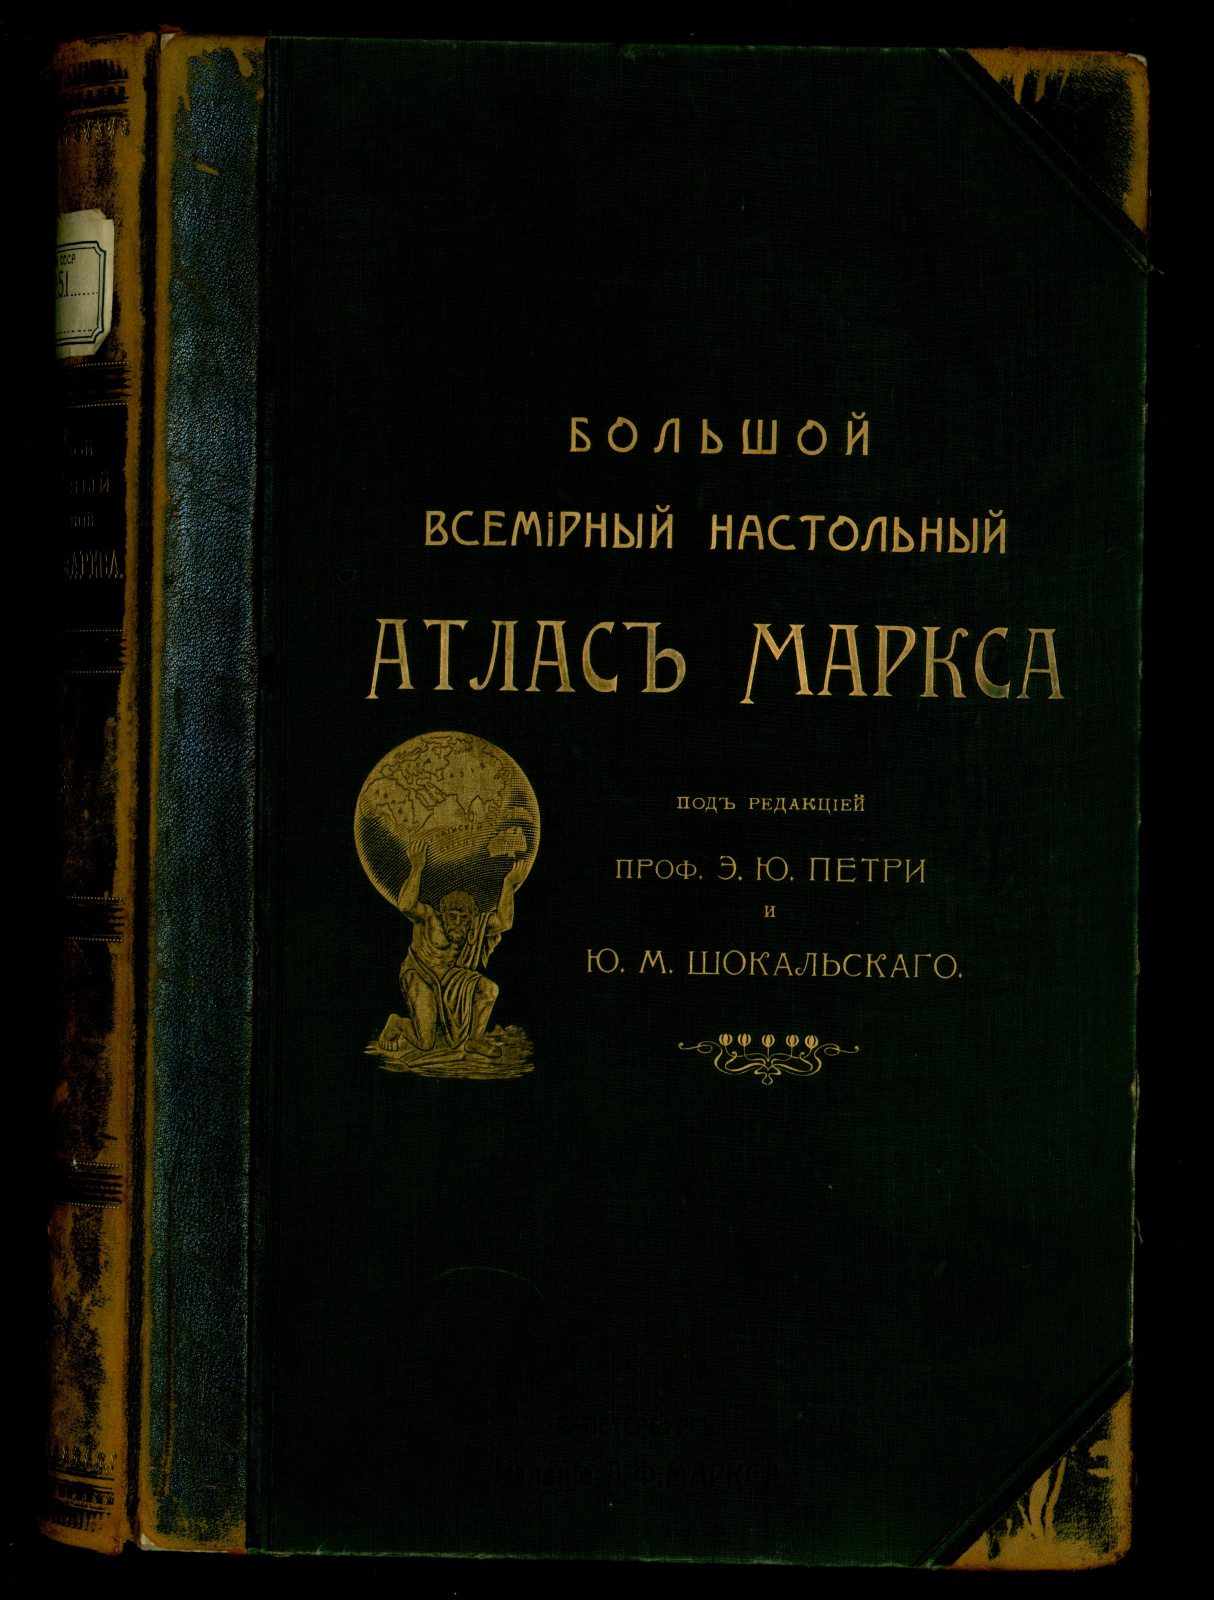 Обложка атласа Маркса, хранящегося в фондах РГО. Фото: Геопортал РГО